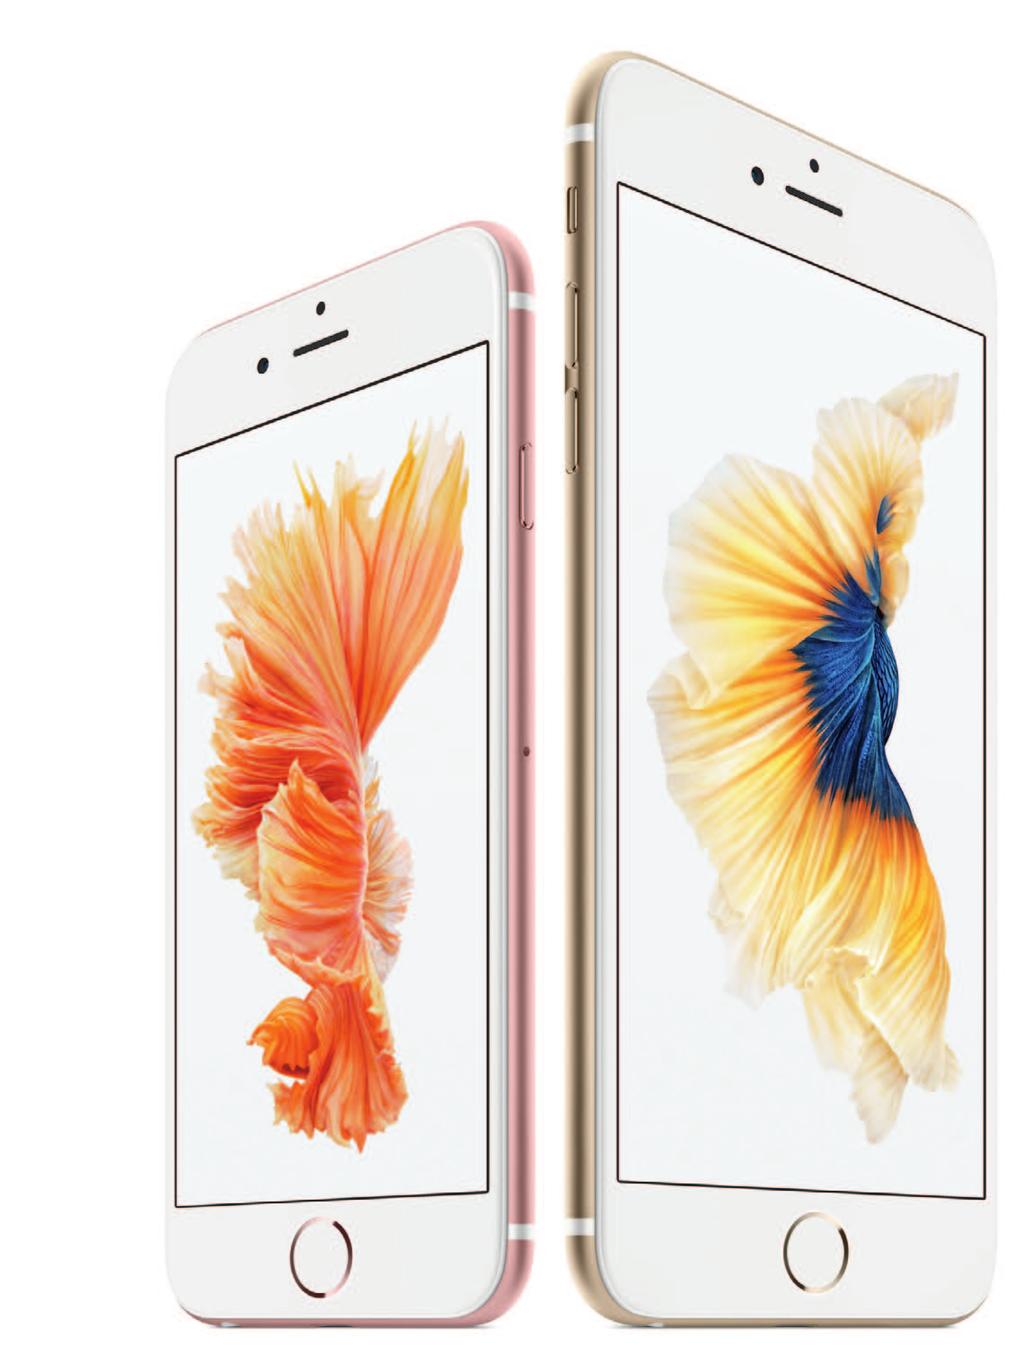 Apple iphone 6s A partire da 779 euro Iva inclusa Oltre che nei classici colori grigio siderale, argento e oro, l iphone 6s è disponibile anche in rosa.